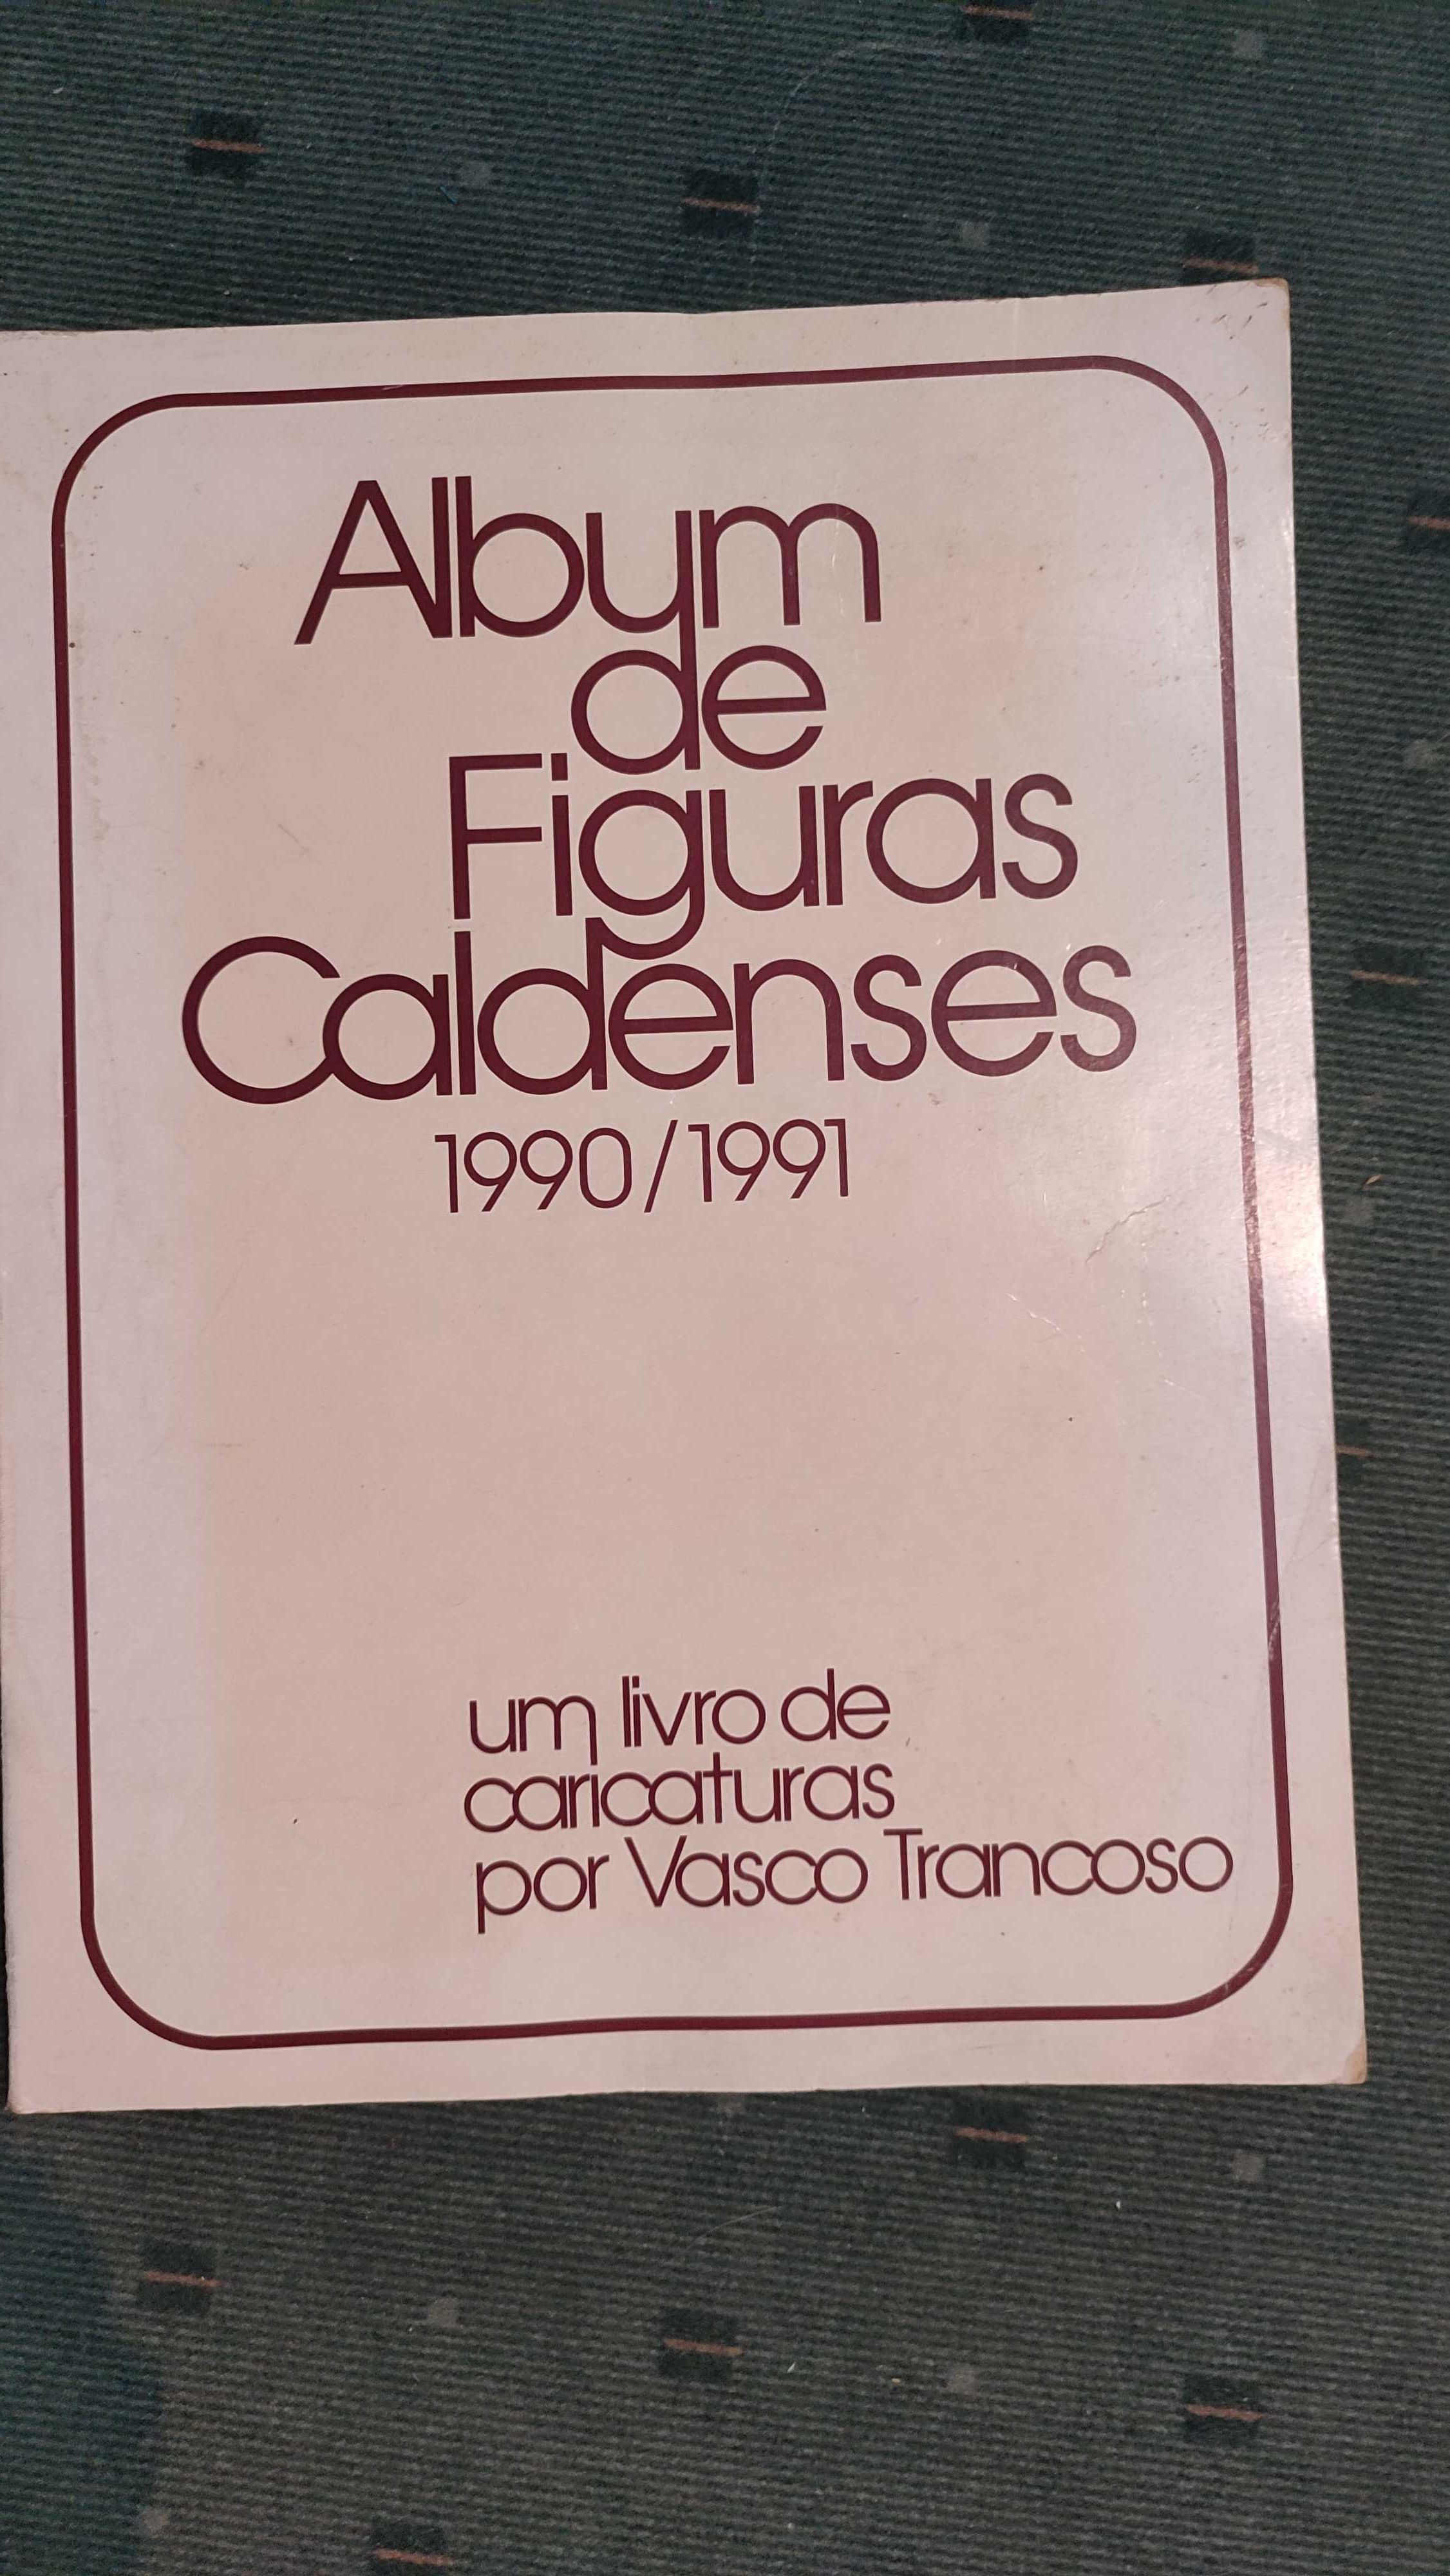 Album de figuras Caldenses - 1990/1991-Caricaturas por Vasco Trancoso